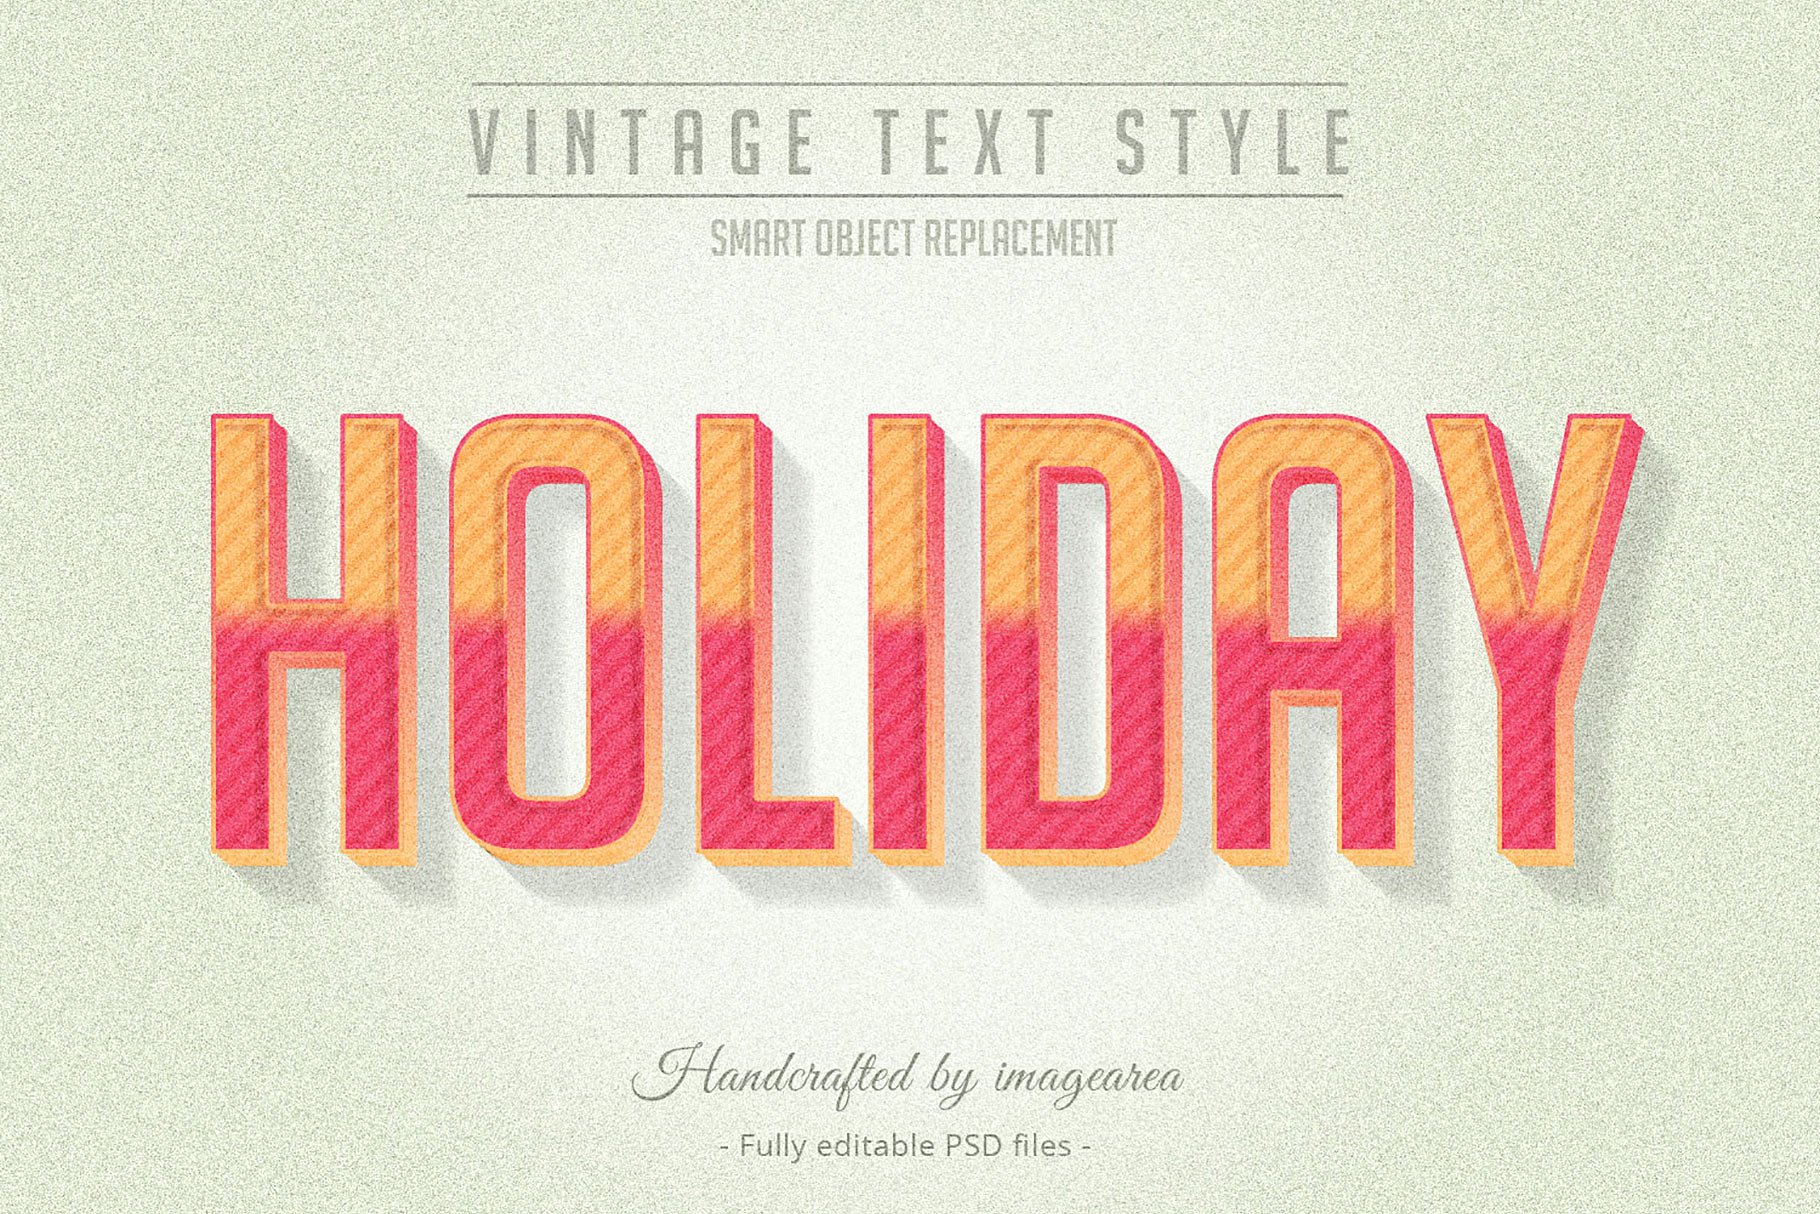 复古条纹风格文本图层样式 Vintage / Retro Text Styles插图(6)